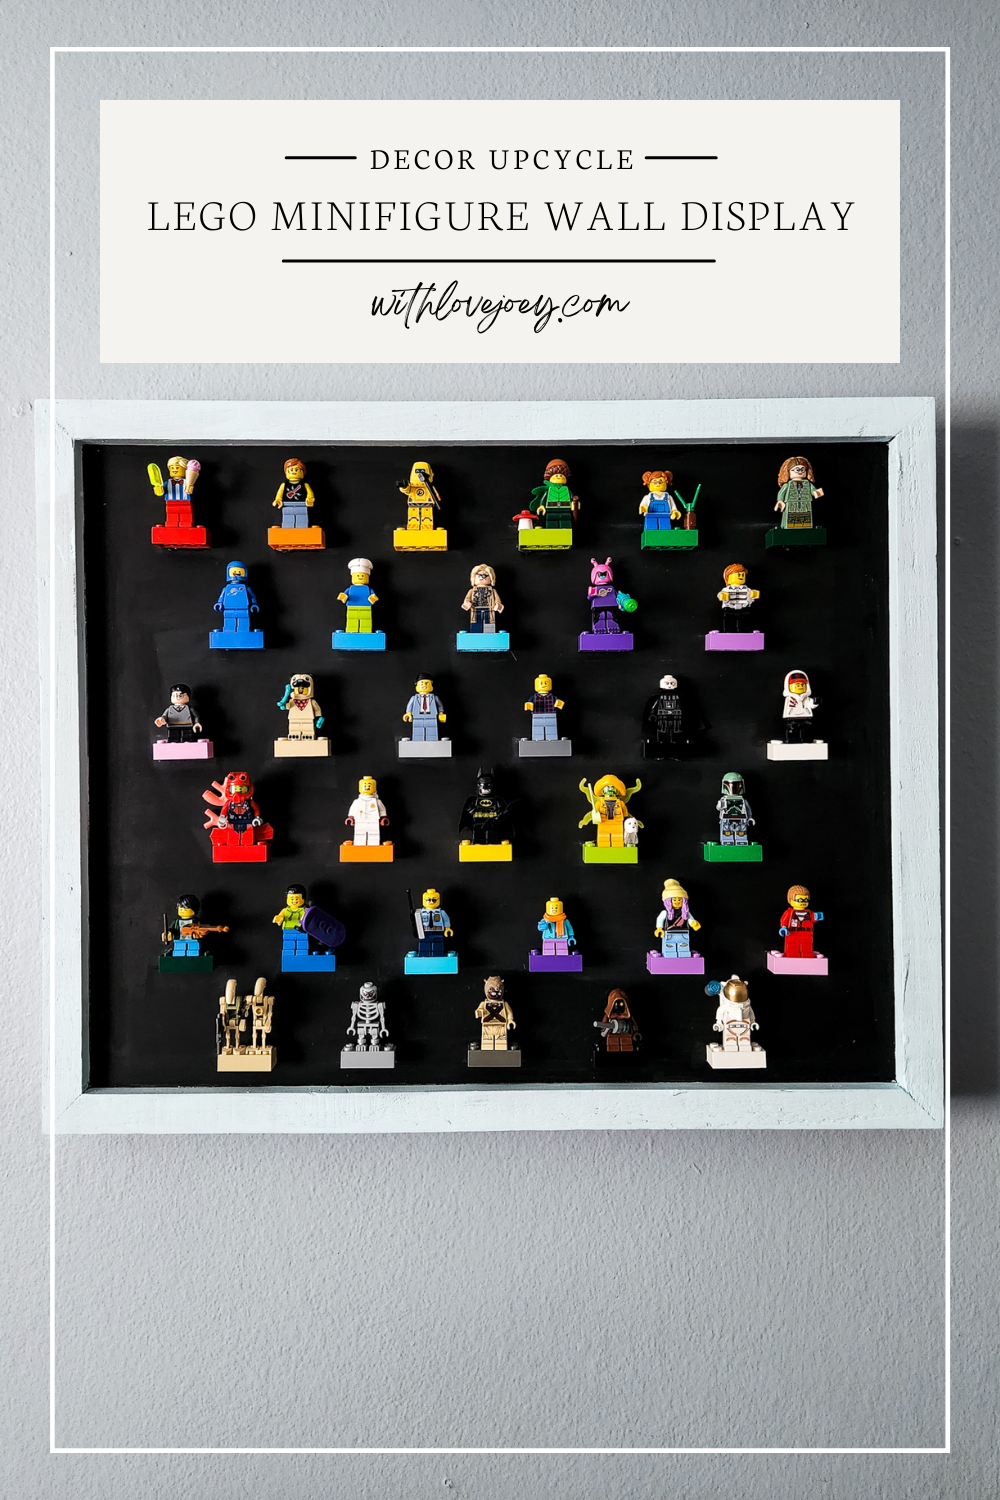 LEGO minifigure wall display